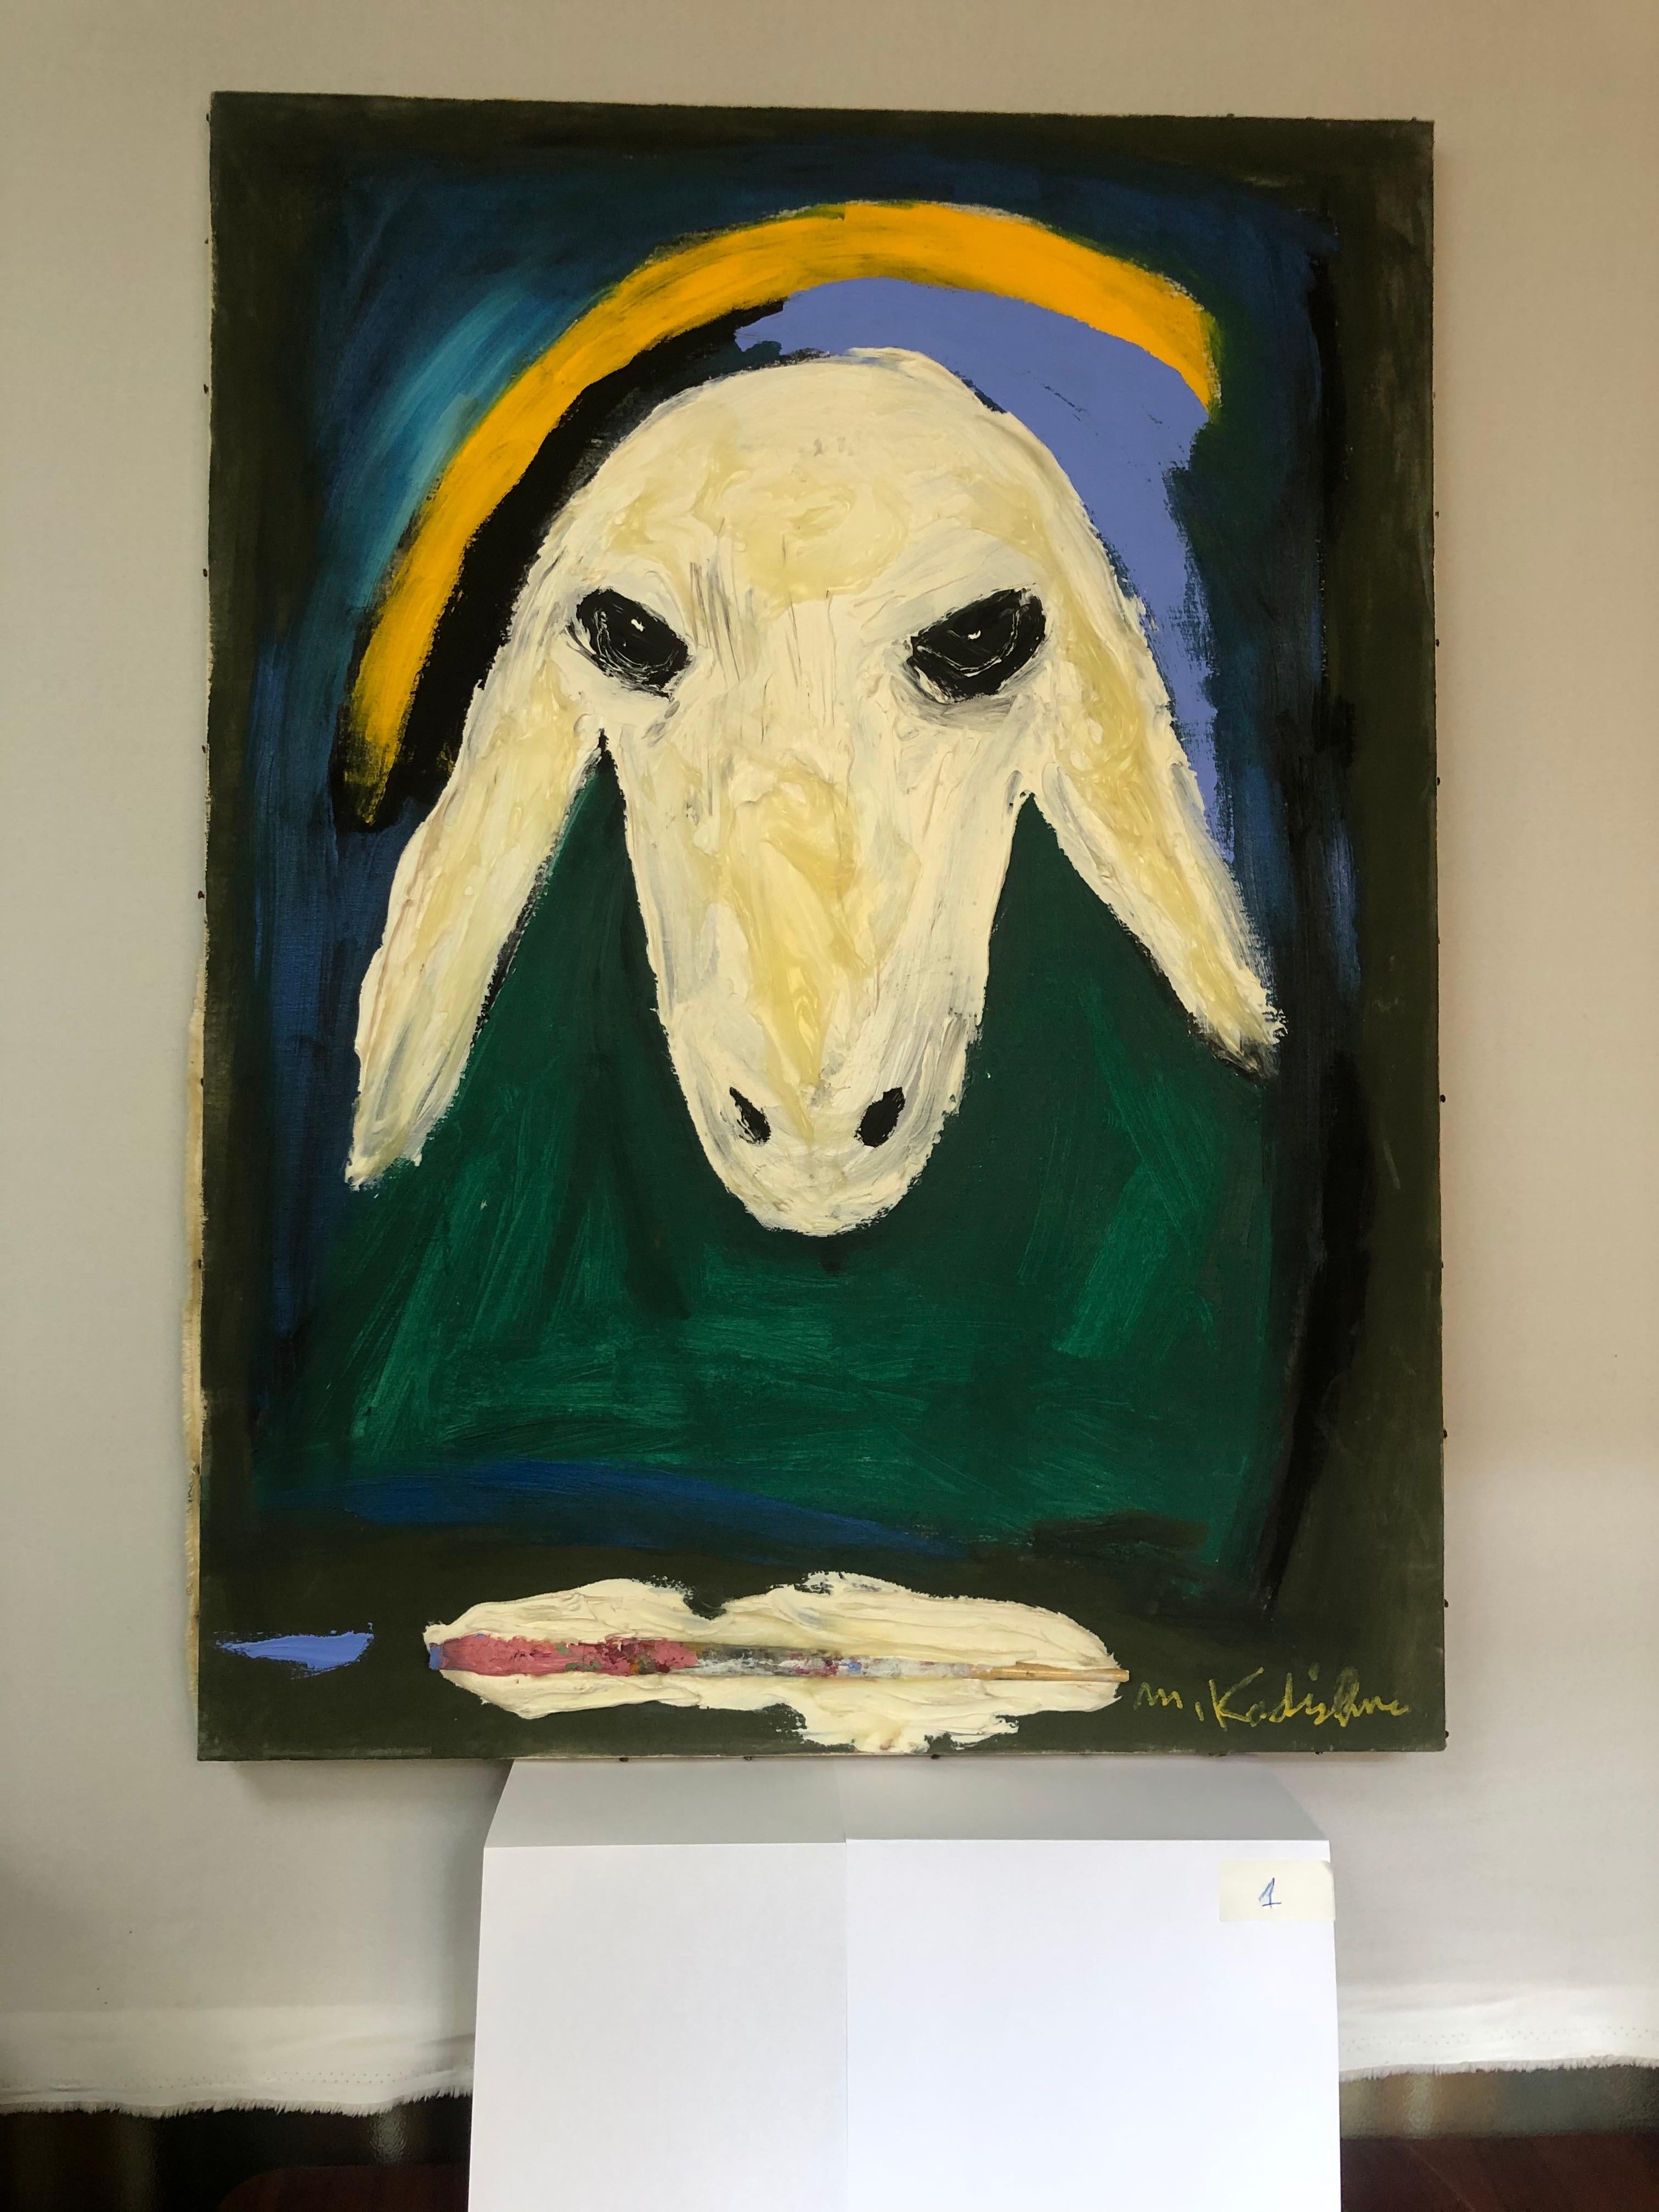 Sheep's Head by Menashe Kadishman 2